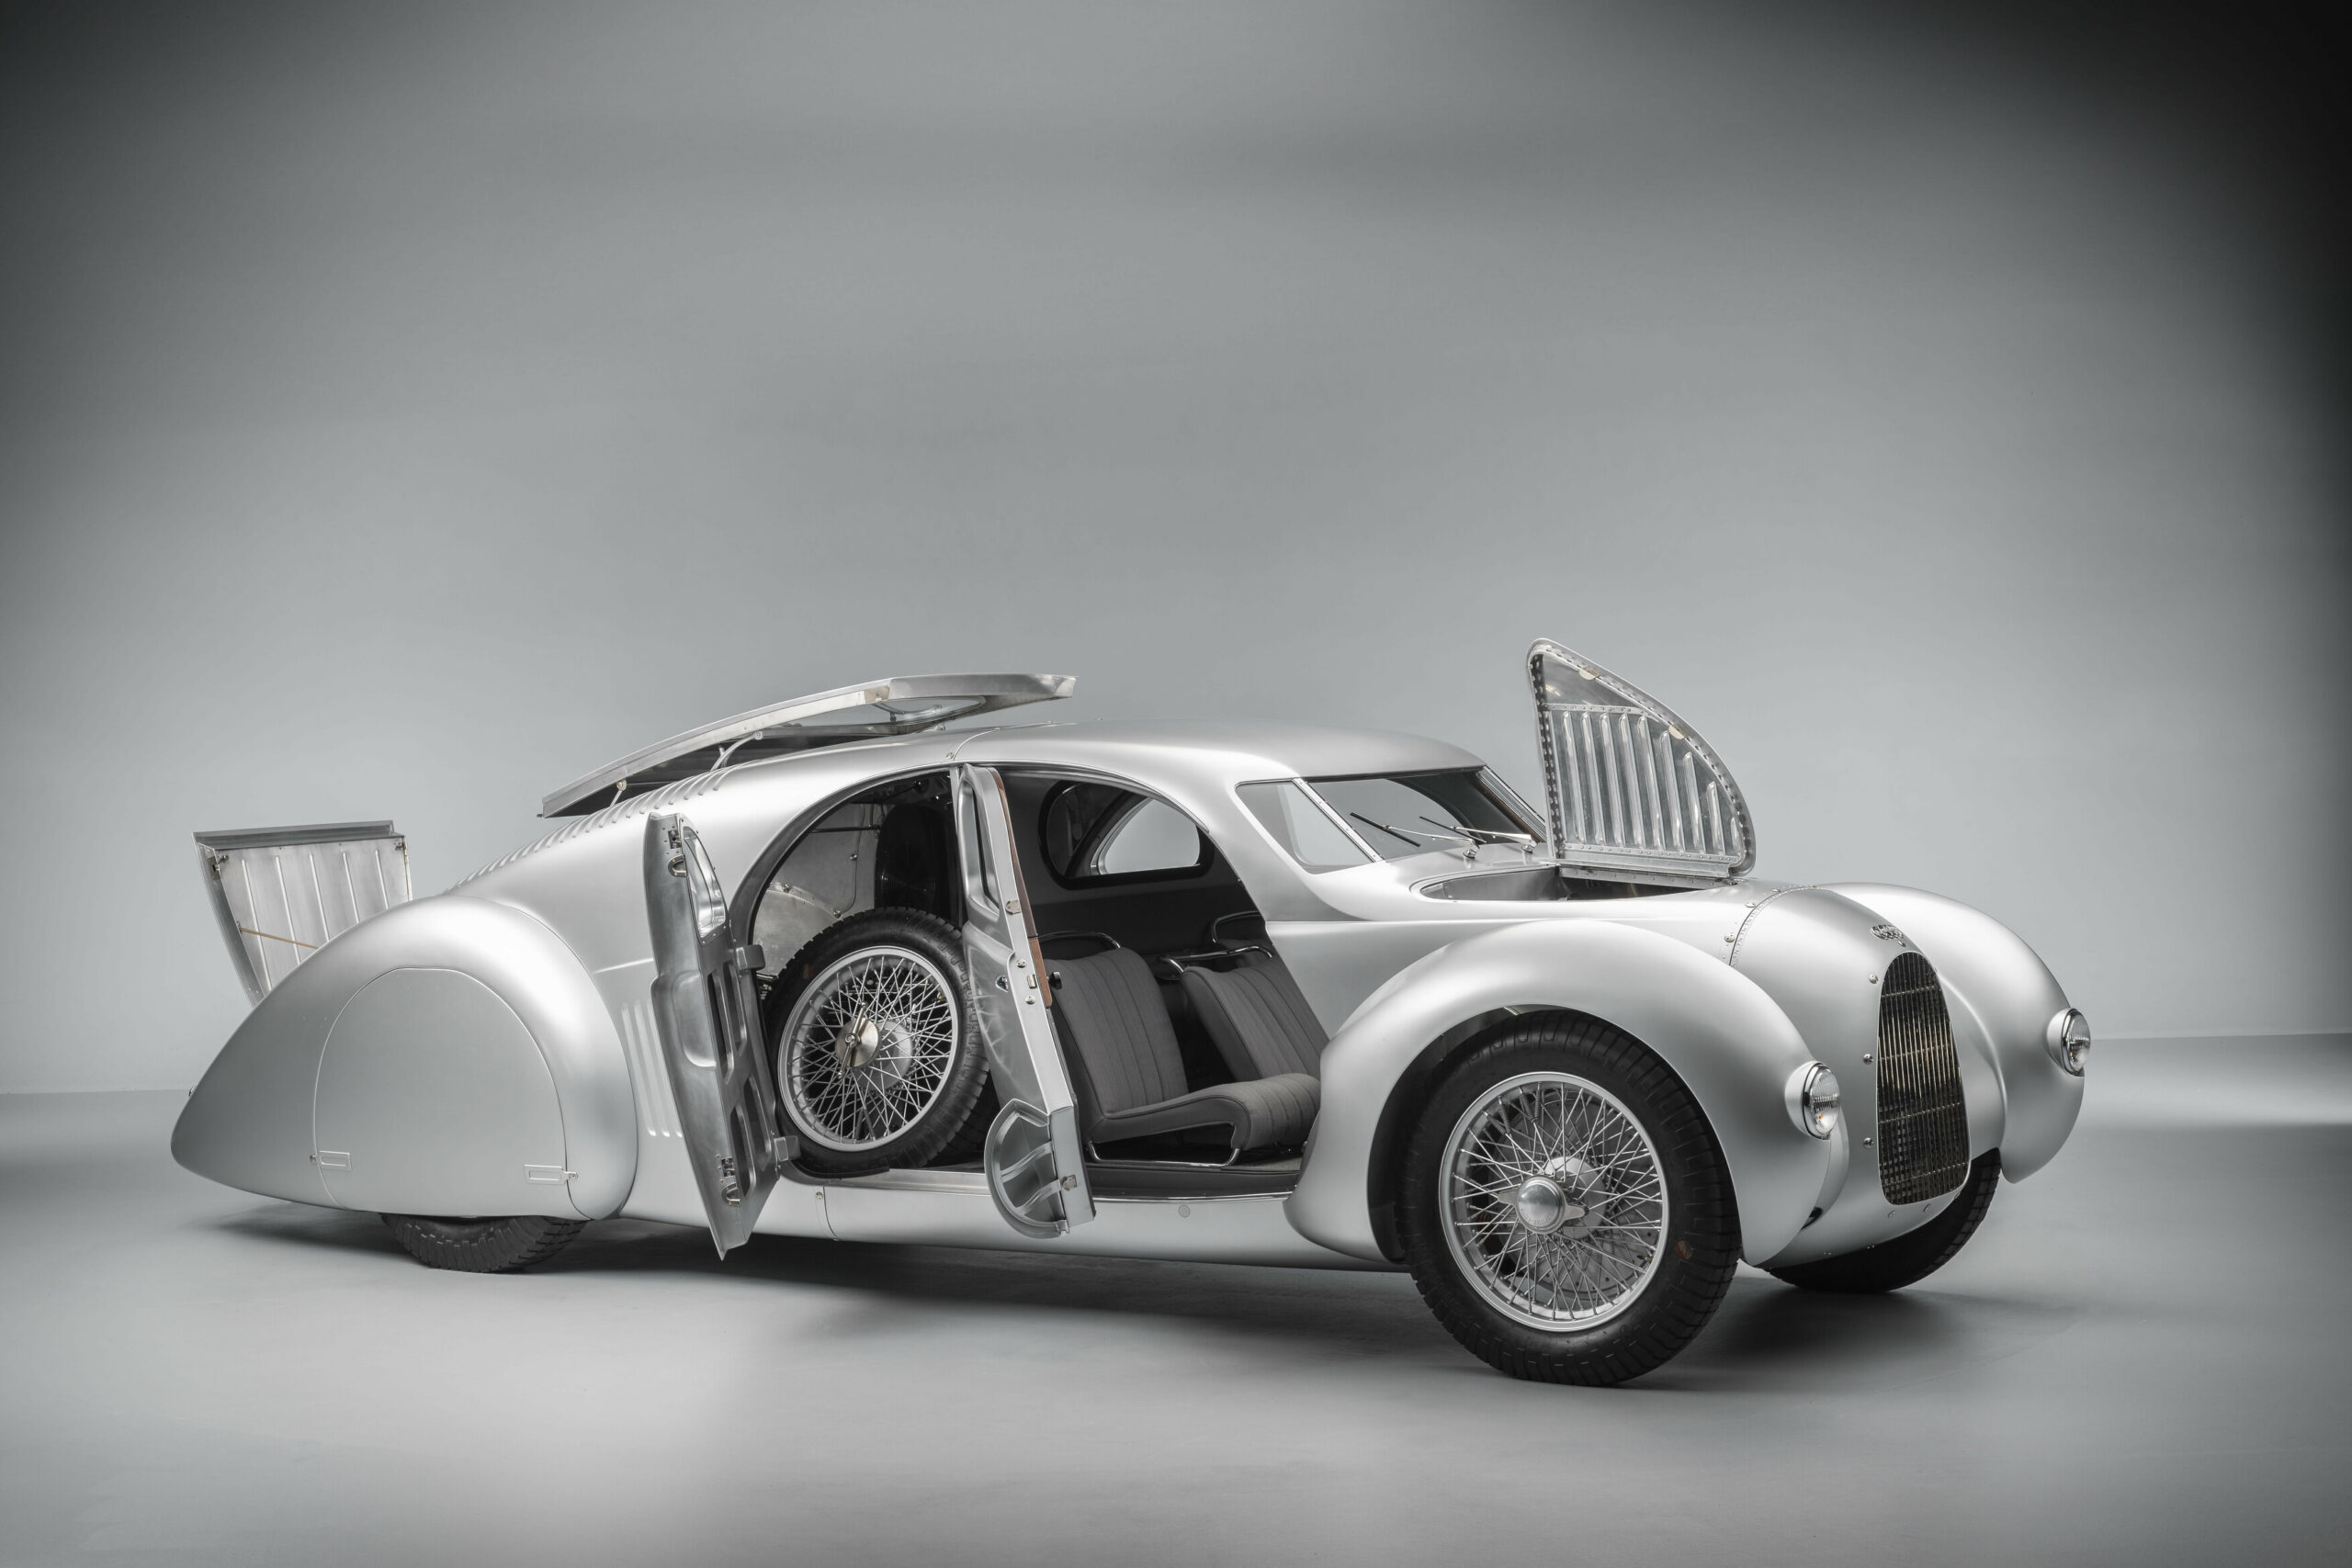 Audi produz o seu supercarro projetado há 90 anos: conheça o Auto Union Typ 52 ‘Schnellsportwagen’